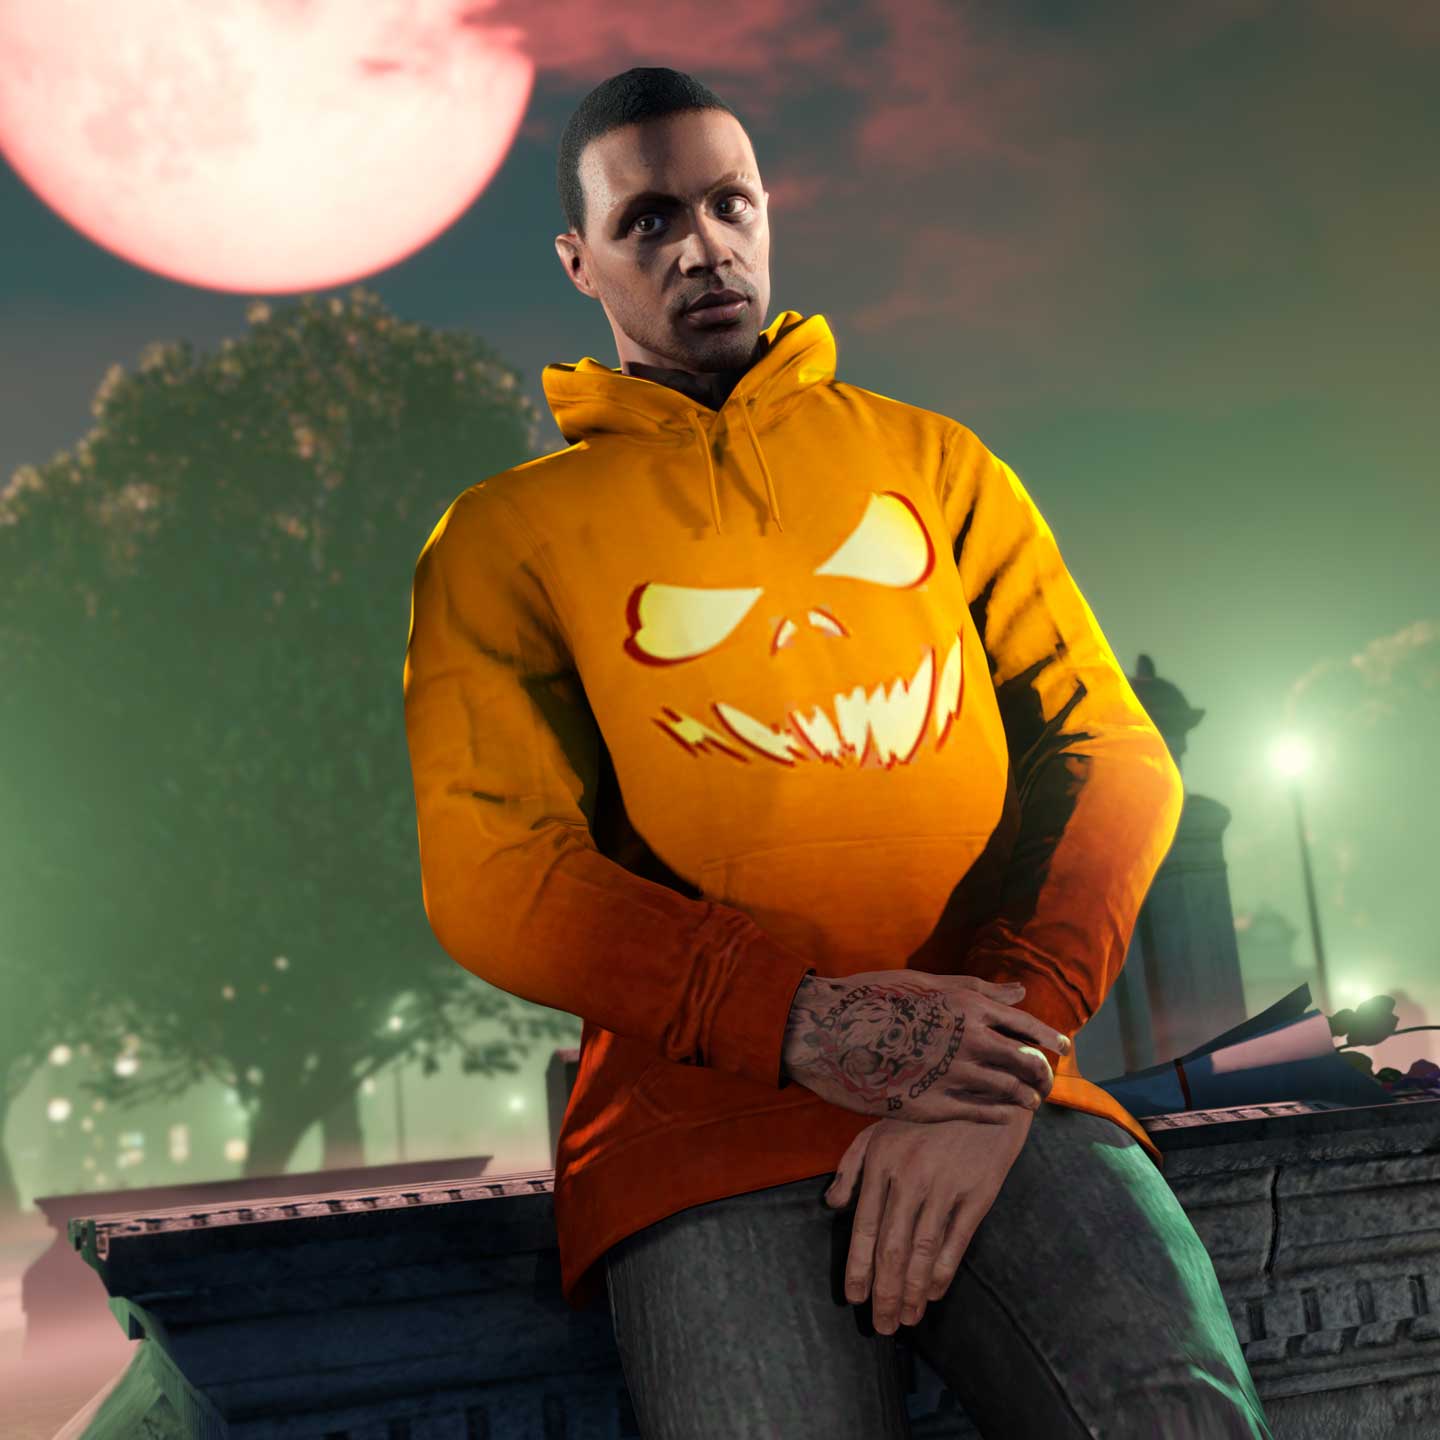 Semana de Halloween em Grand Theft Auto Online - Xbox Wire em Português